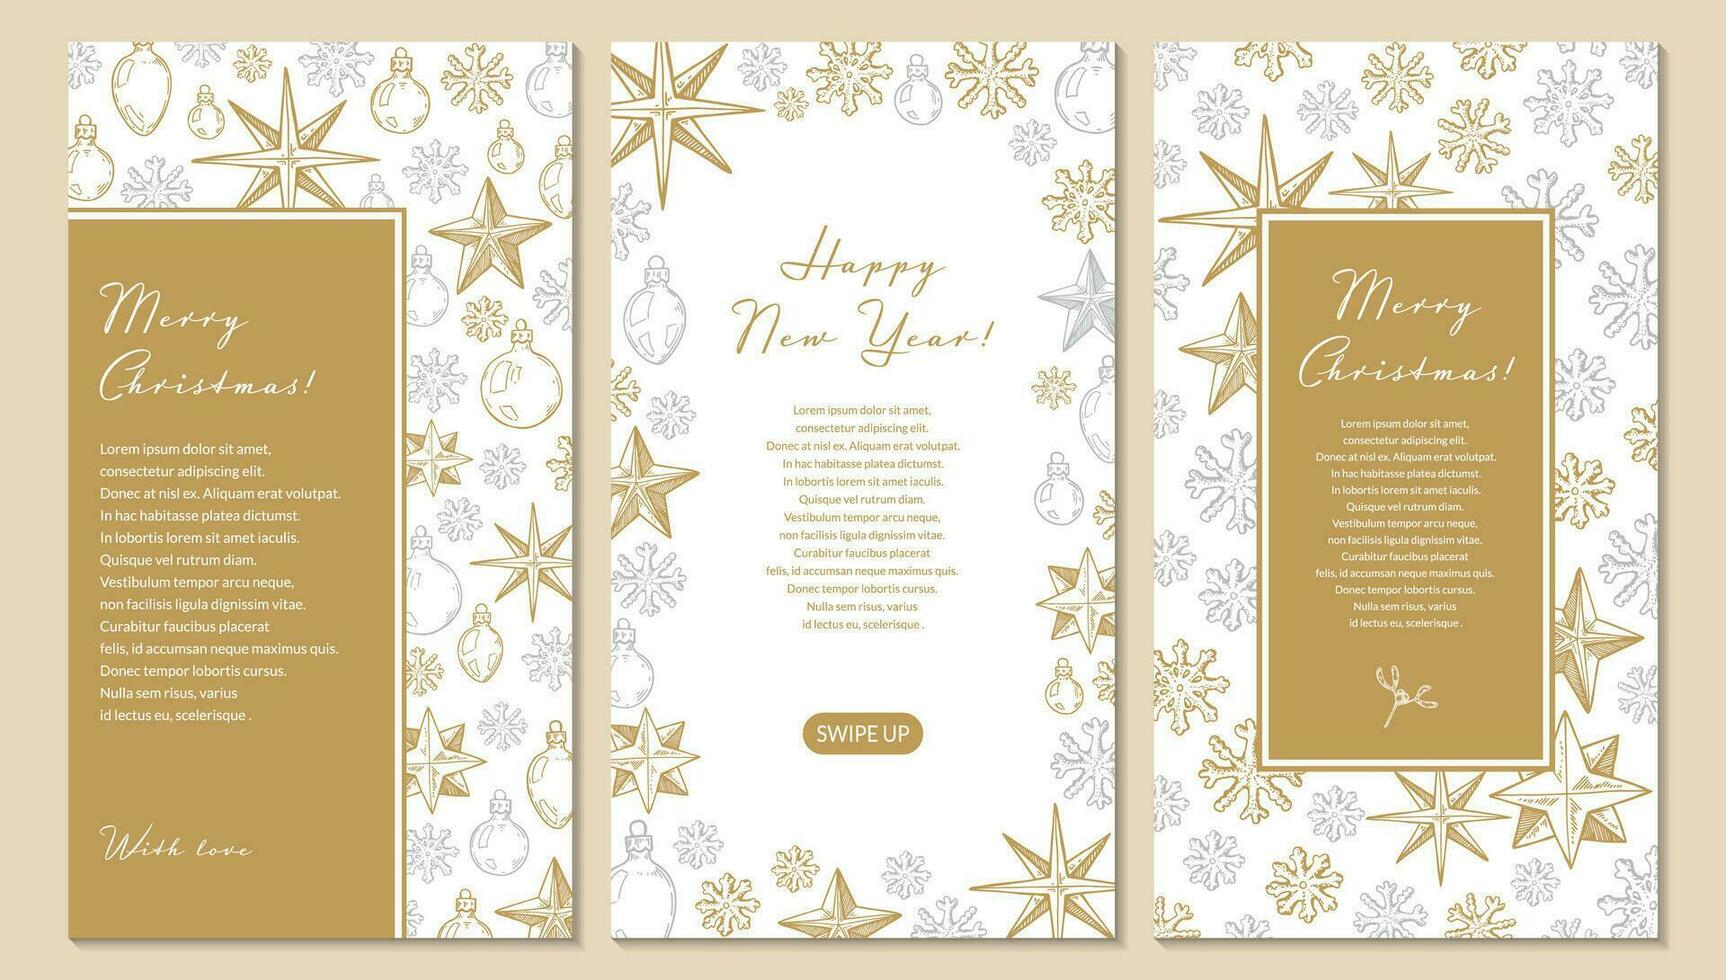 conjunto de tarjetas de felicitación verticales de feliz navidad y feliz año nuevo con estrellas doradas de cinco puntas dibujadas a mano y copos de nieve. ilustración vectorial en estilo boceto. plantilla de historias de redes sociales vector